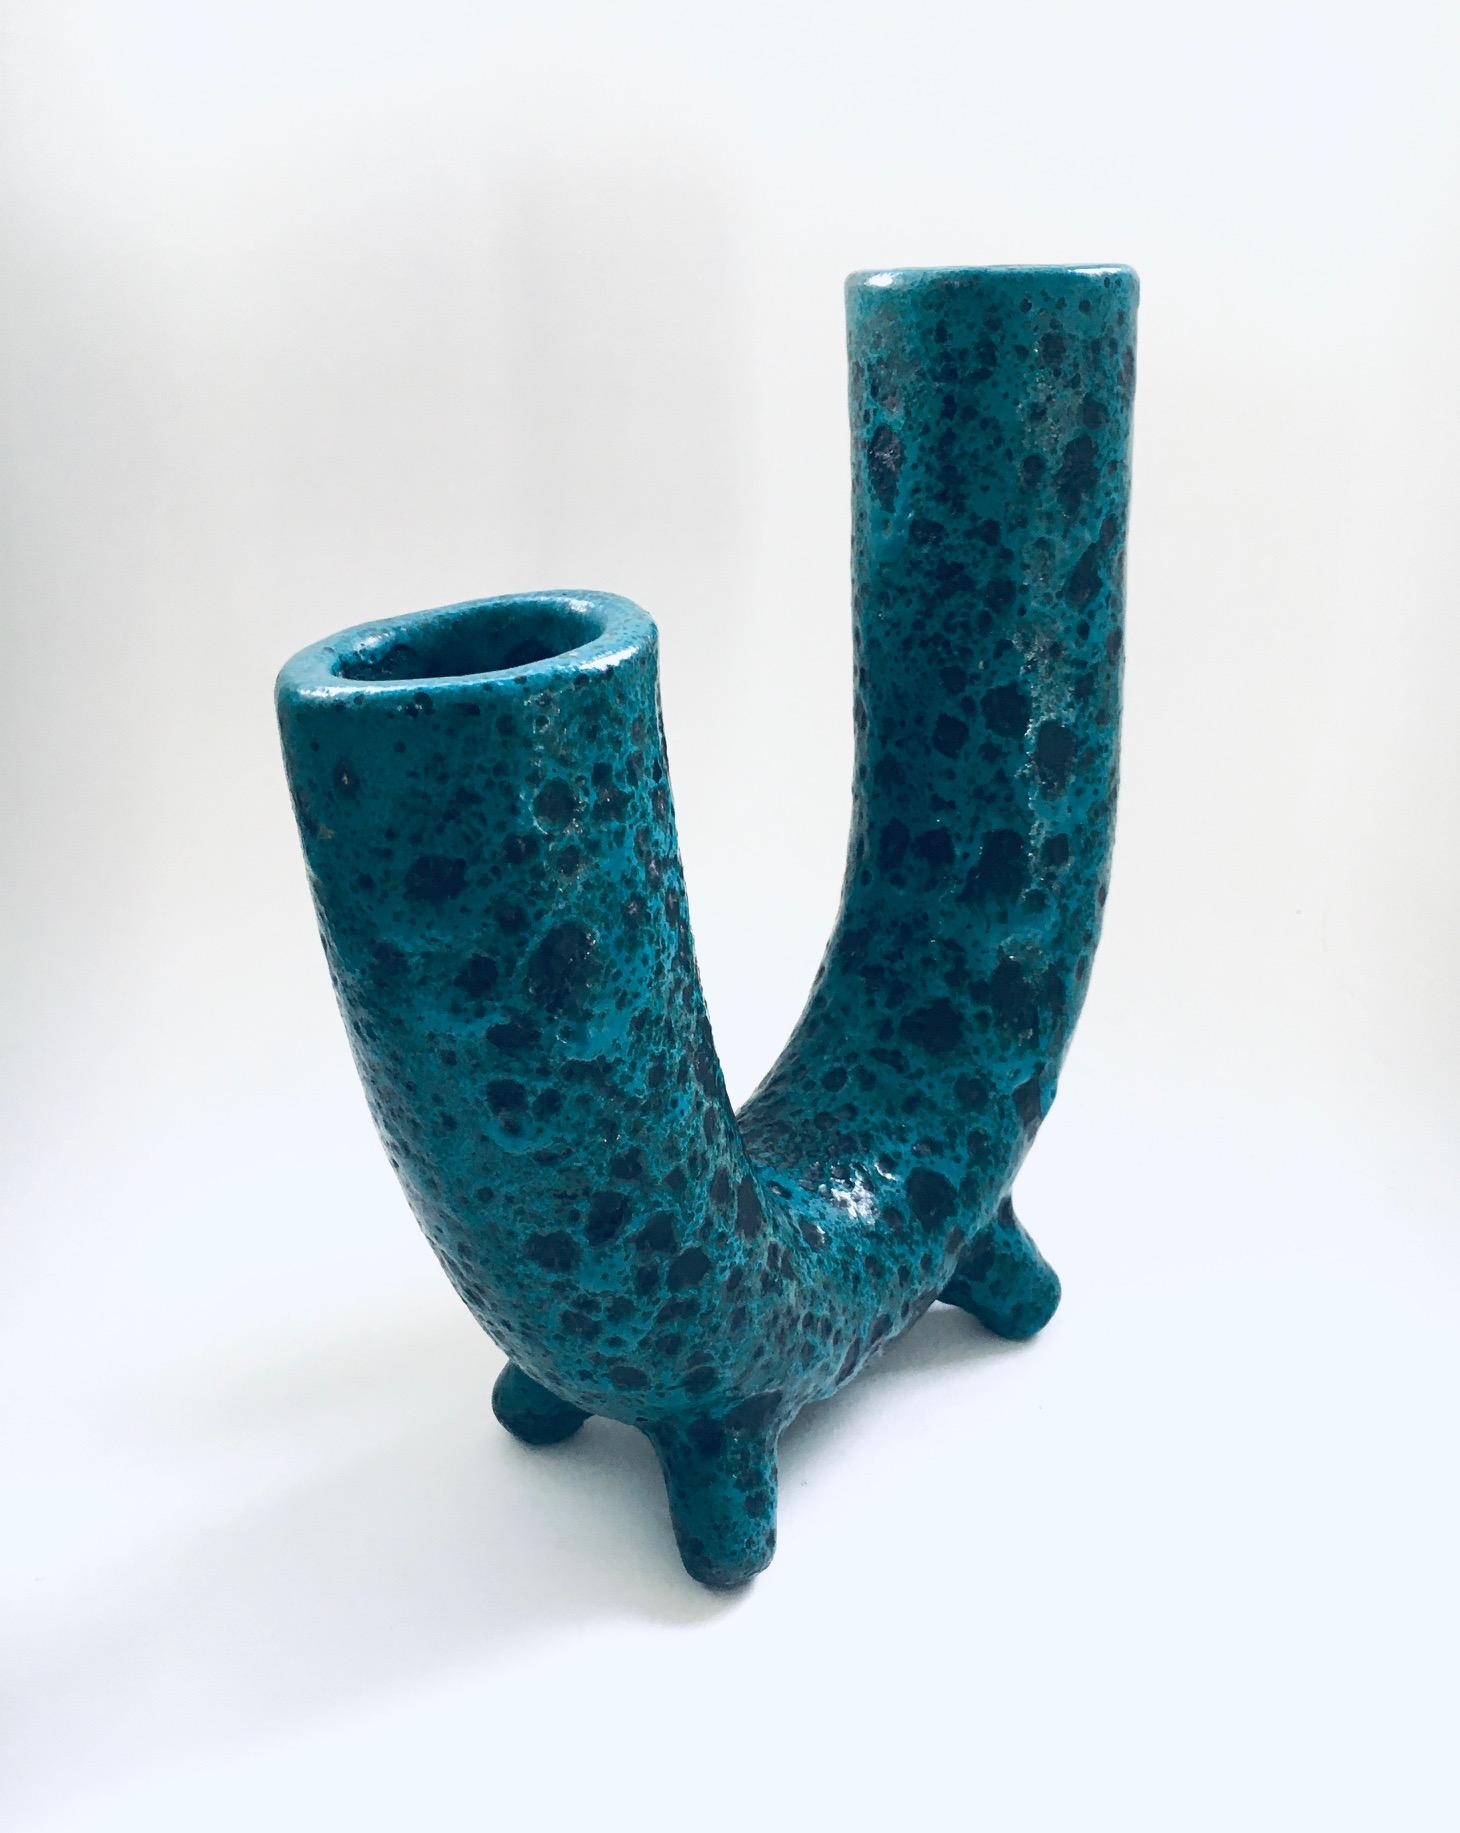 Brutalist Art Pottery Studio Fat Lava Horn Spout Vase, Belgium 1960's For Sale 2